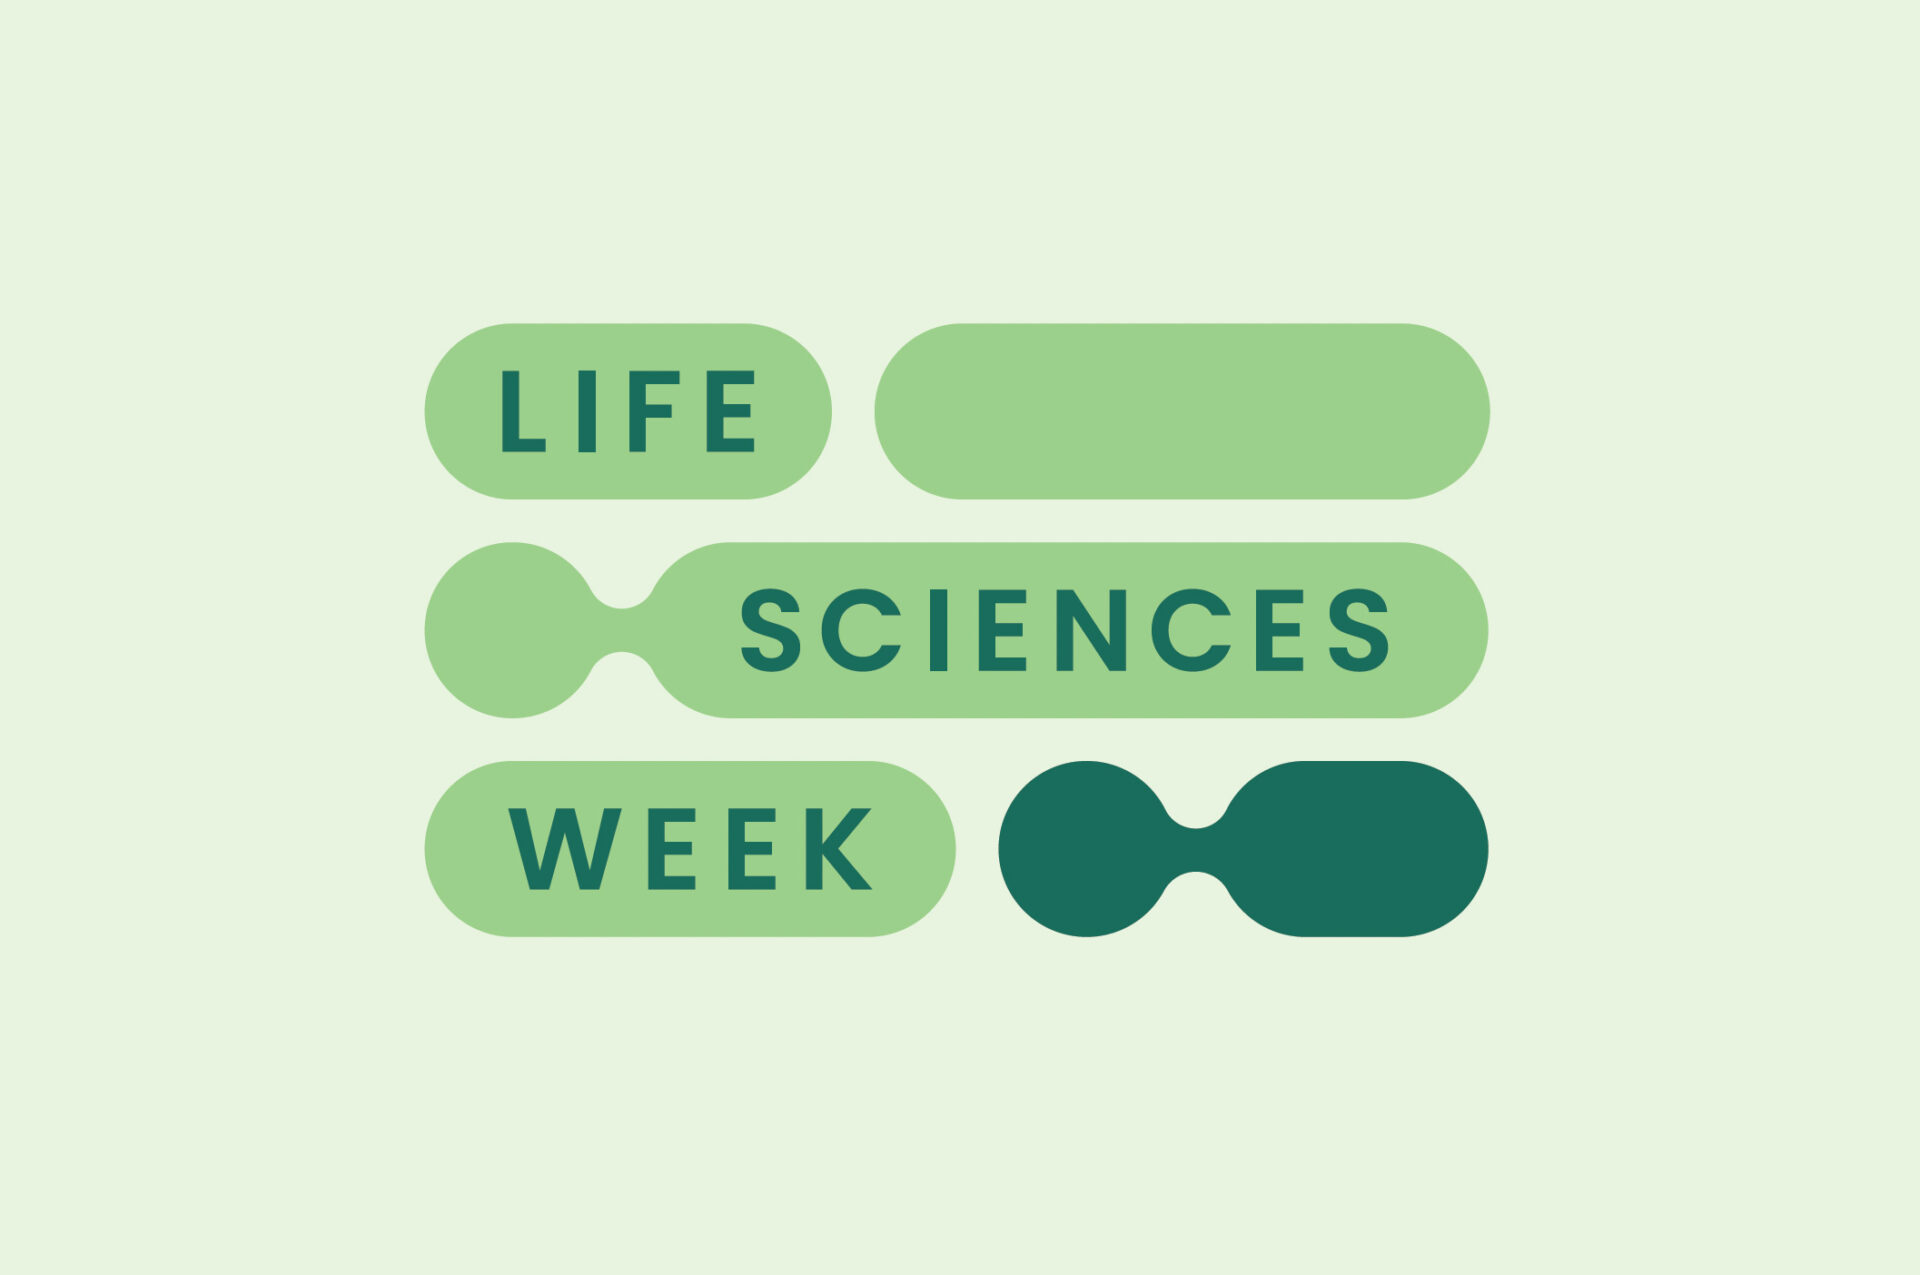 Life Sciences Week